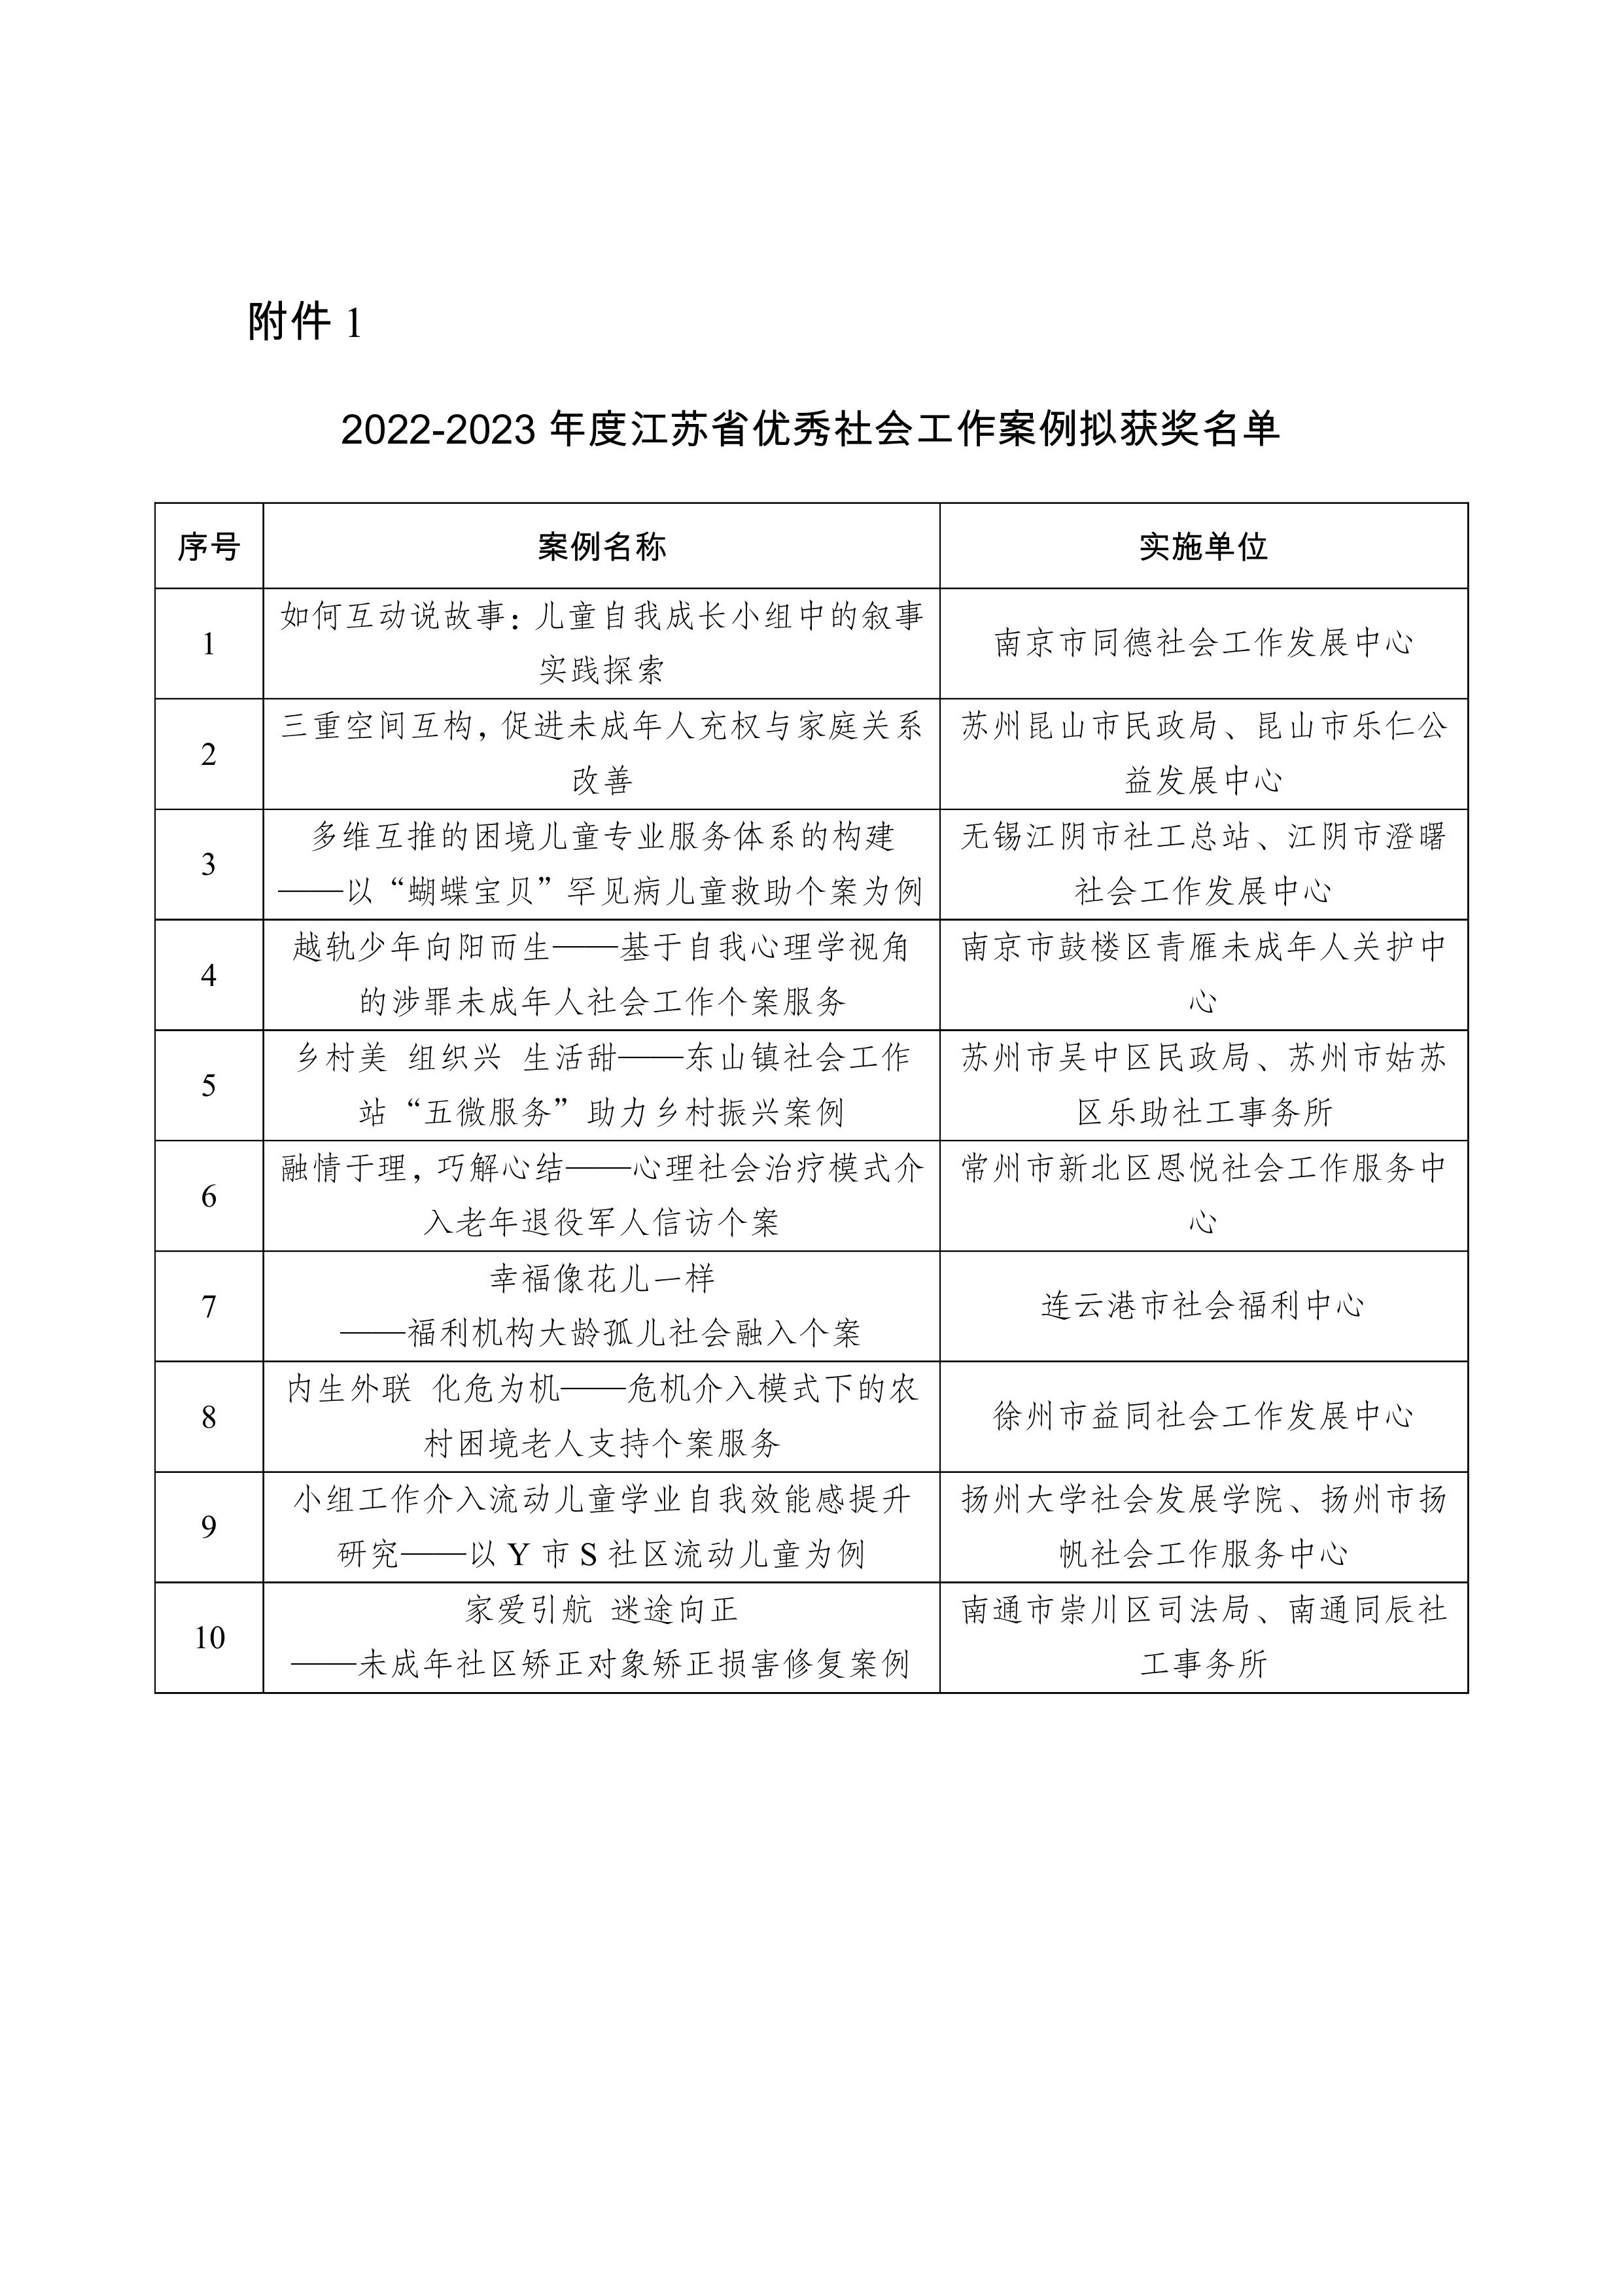 2022-2023年度江苏省优秀社会工作案例及项目征集结果的公示